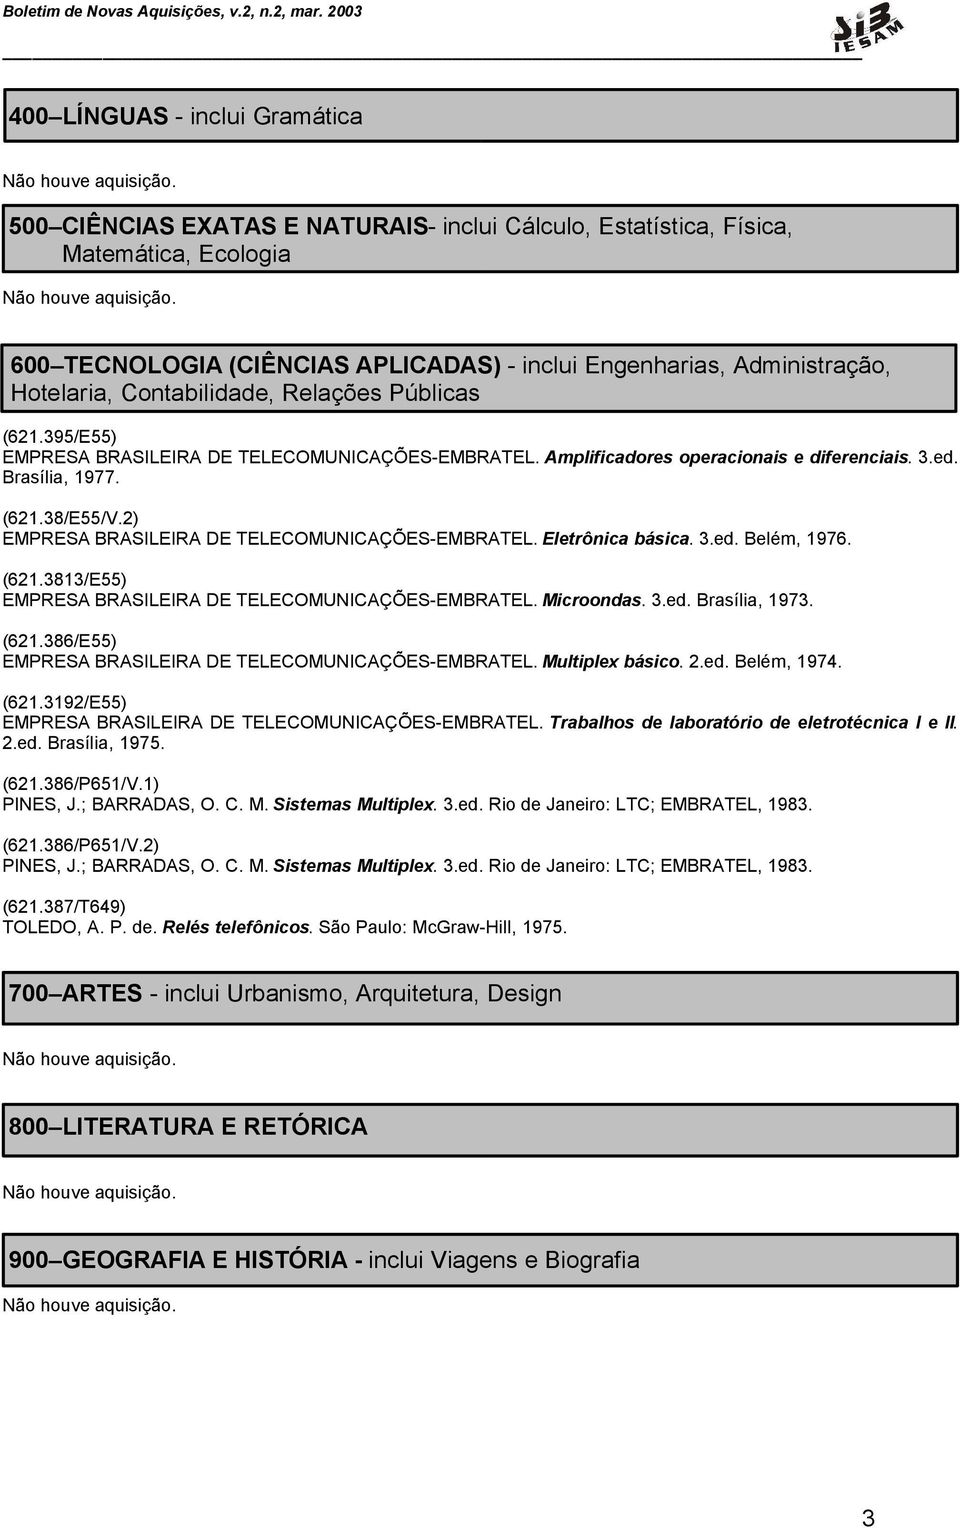 2) EMPRESA BRASILEIRA DE TELECOMUNICAÇÕES-EMBRATEL. Eletrônica básica. 3.ed. Belém, 1976. (621.3813/E55) EMPRESA BRASILEIRA DE TELECOMUNICAÇÕES-EMBRATEL. Microondas. 3.ed. Brasília, 1973. (621.386/E55) EMPRESA BRASILEIRA DE TELECOMUNICAÇÕES-EMBRATEL.